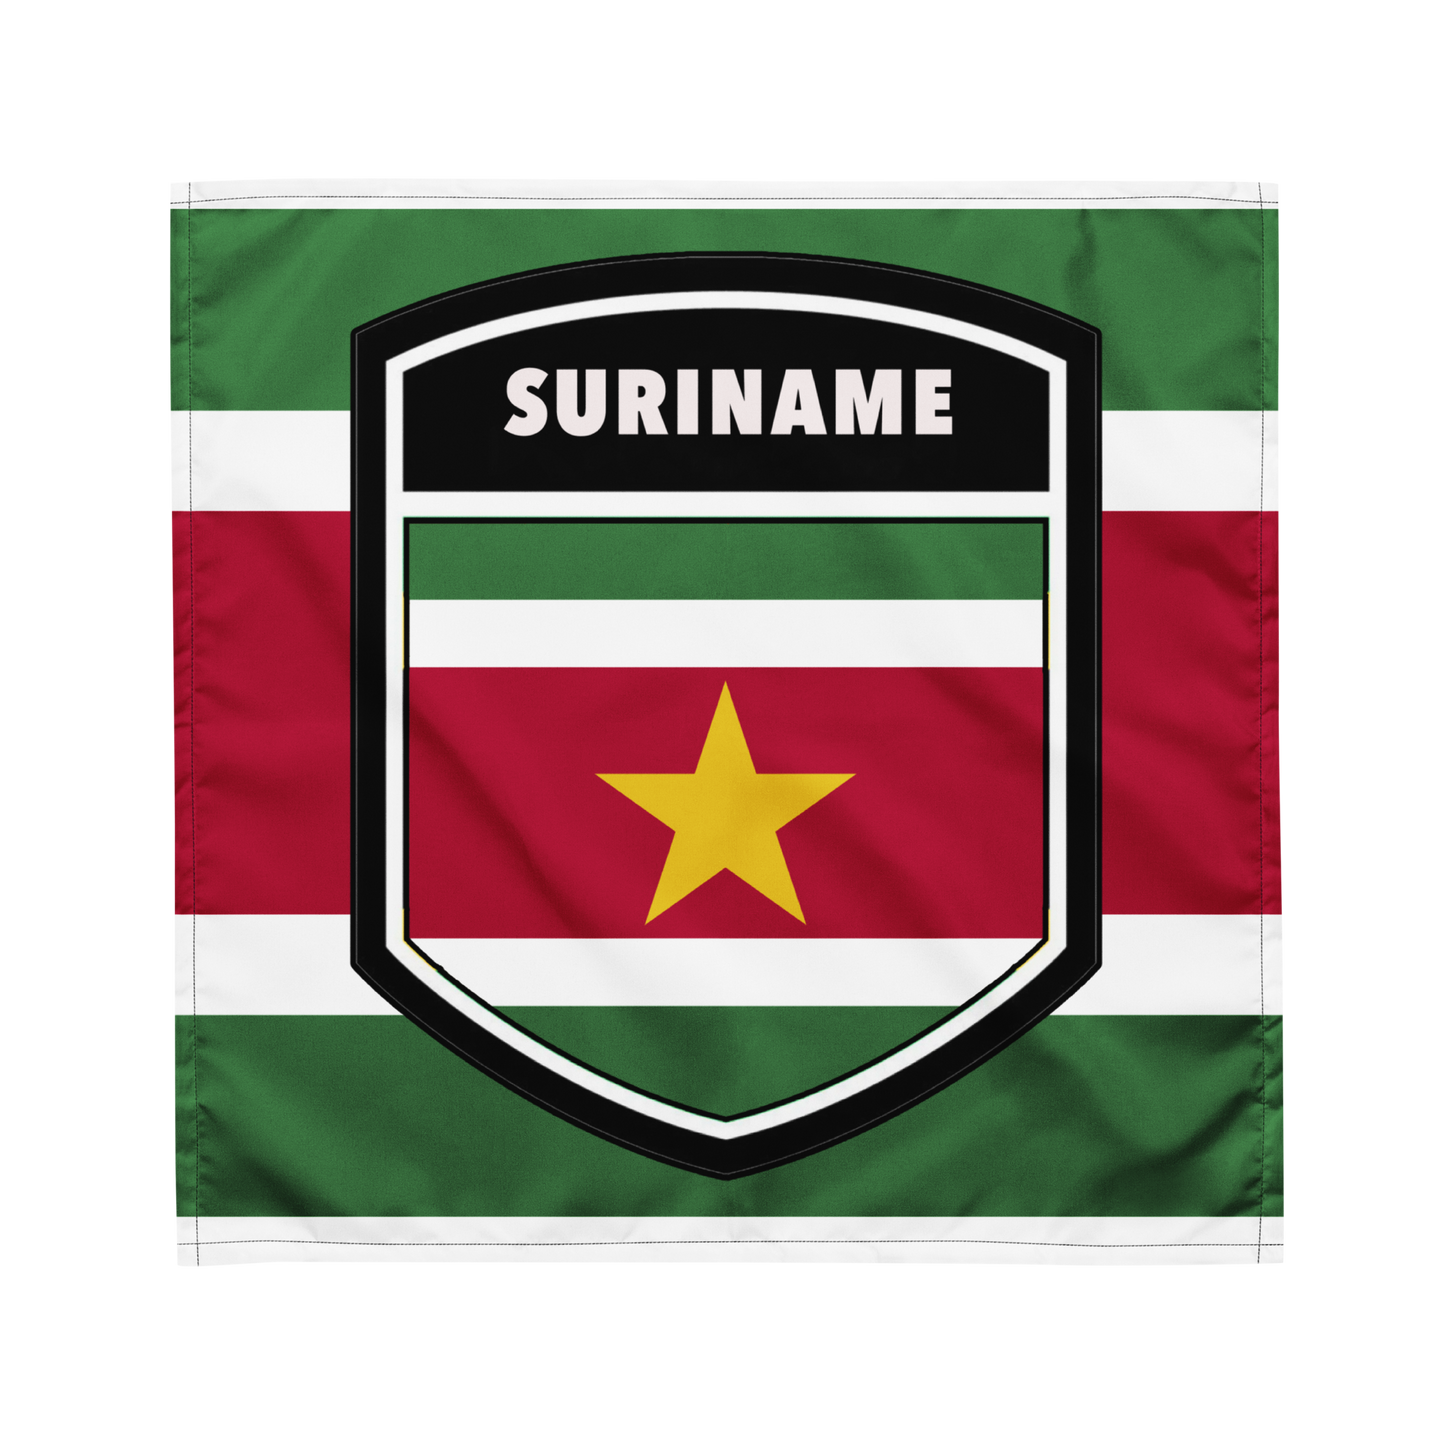 Suriname bandana